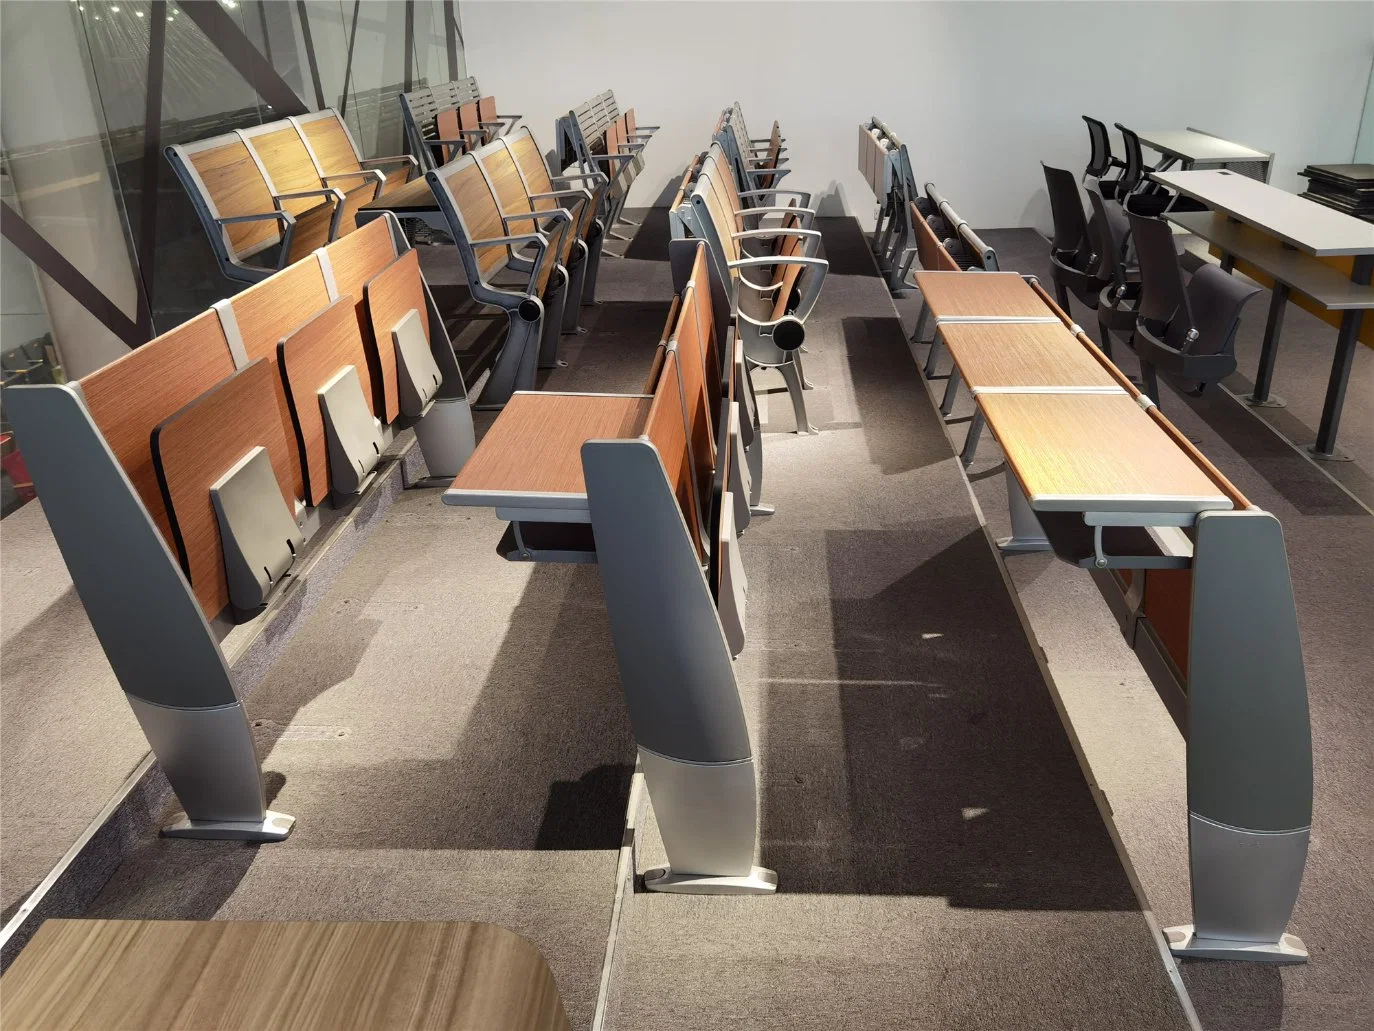 Nouveau Design School Desk et Chair Salle de Classe Student Furniture Set Tc-982